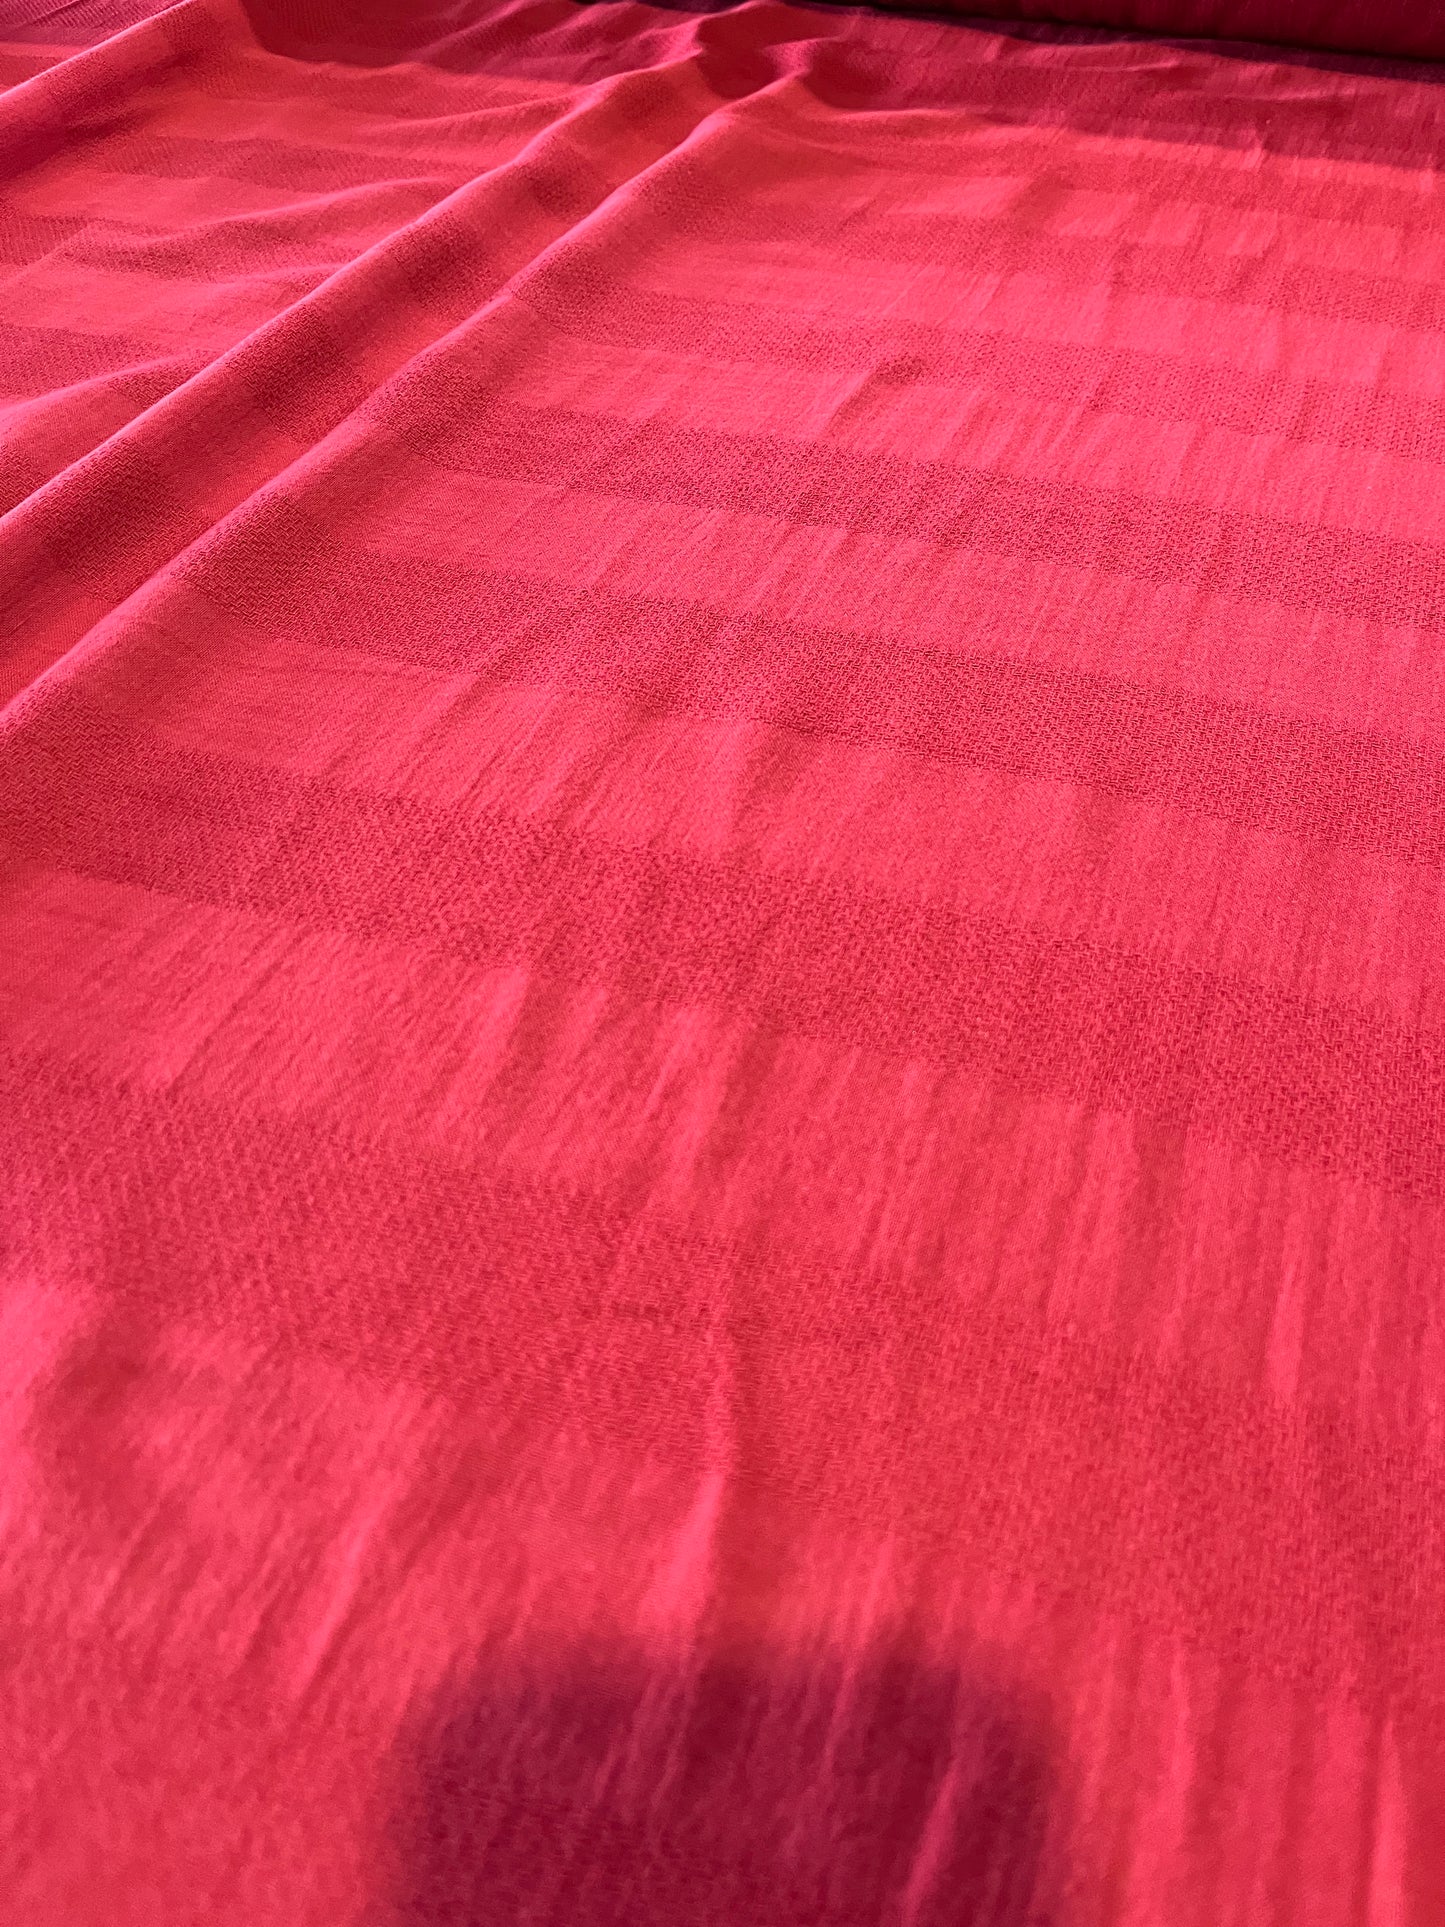 Pisa 054 gauze stripes red